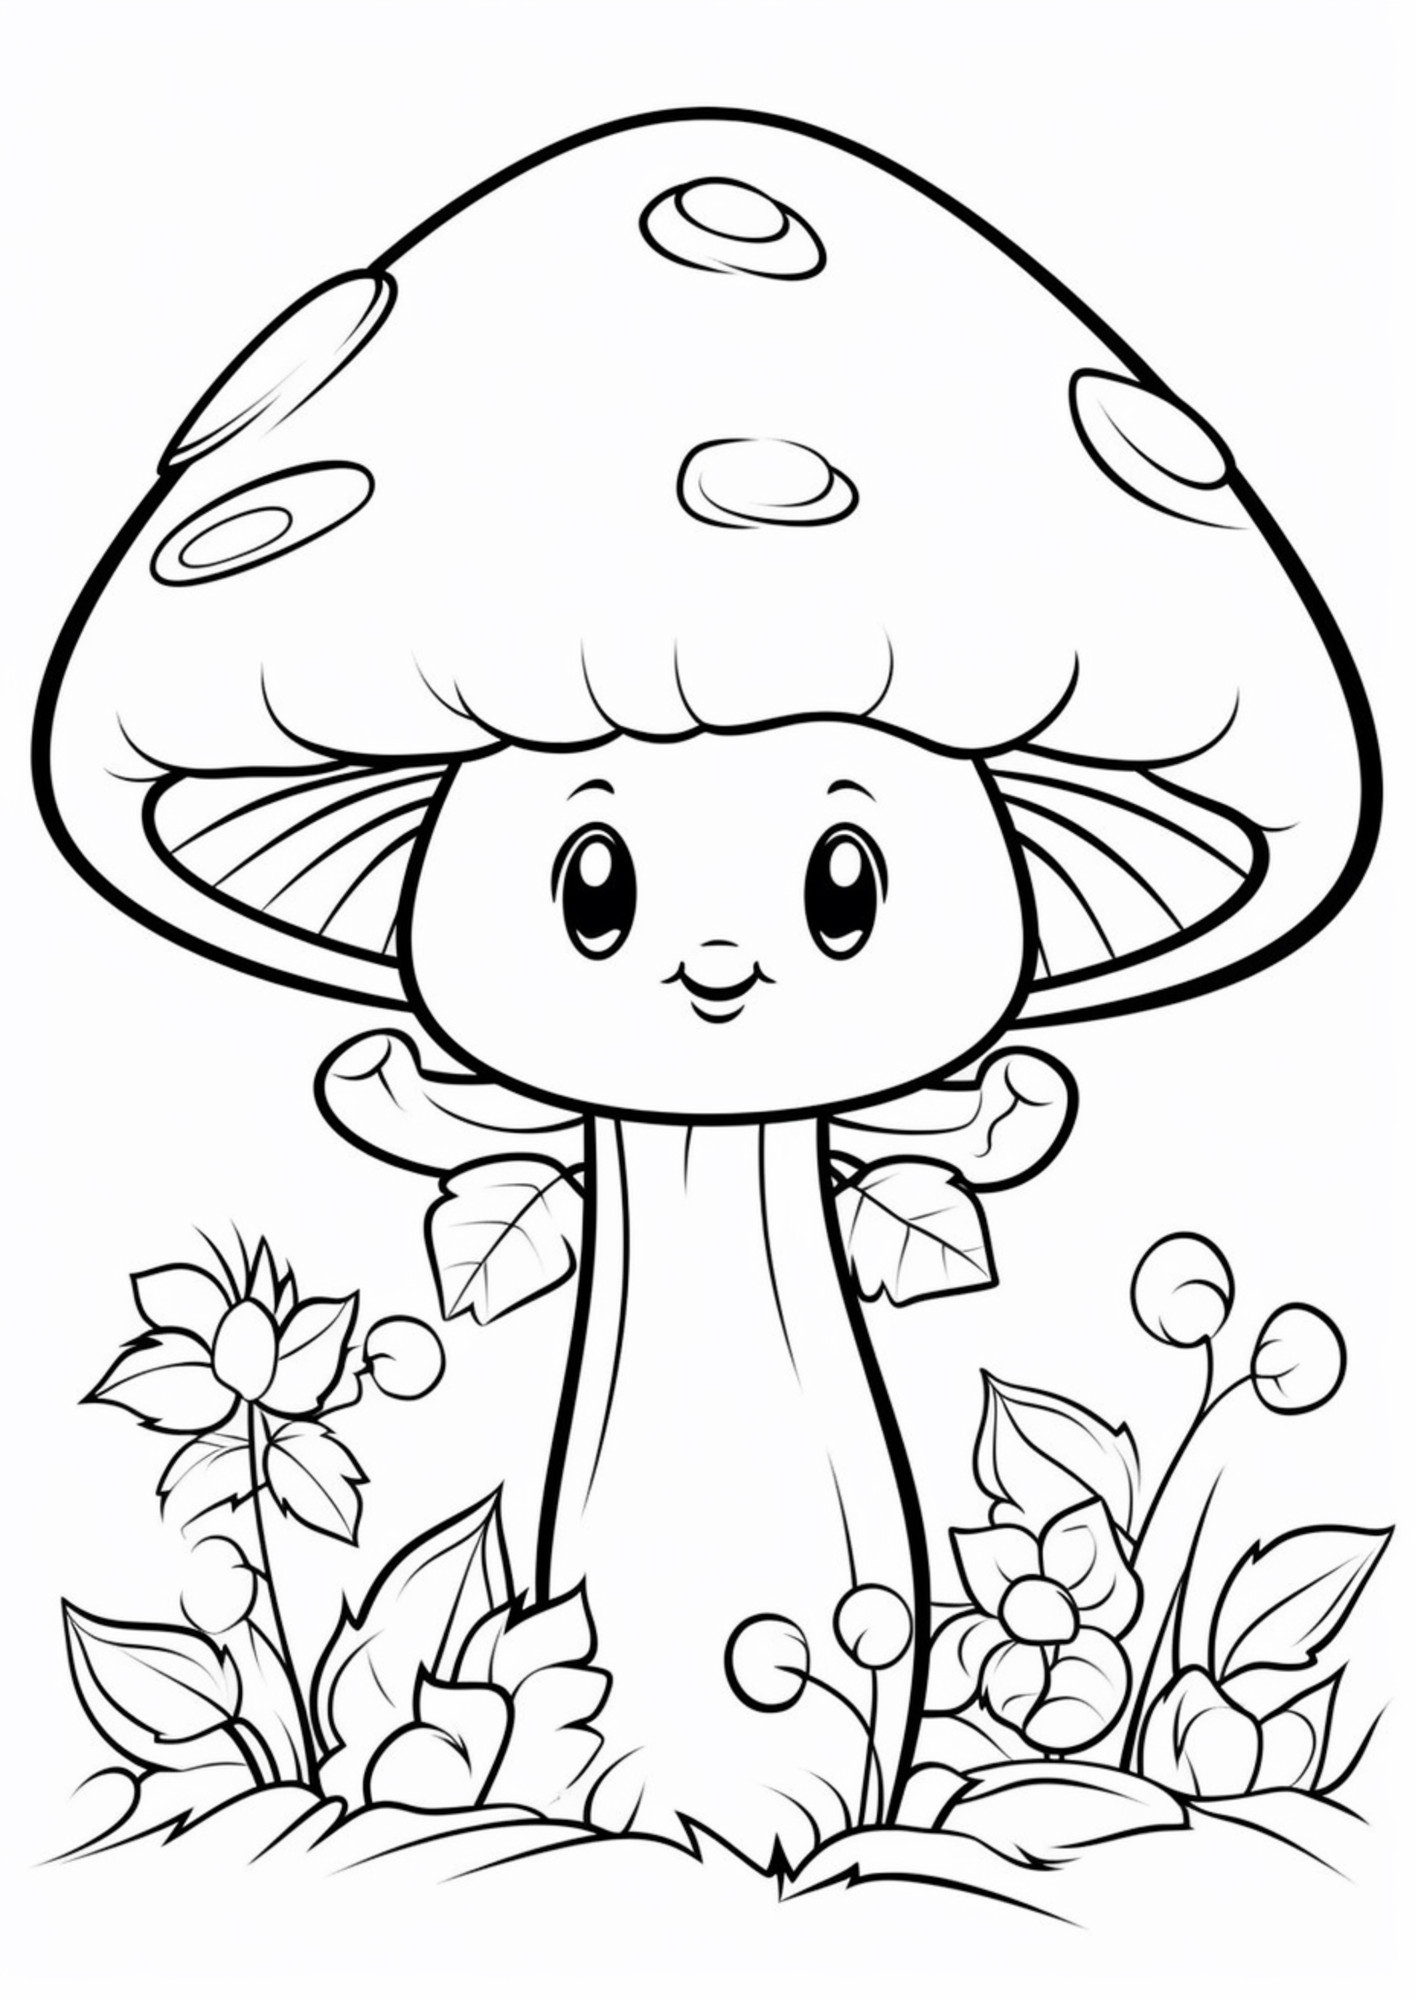 Раскраска для детей: мультяшный гриб с лицом и листочками